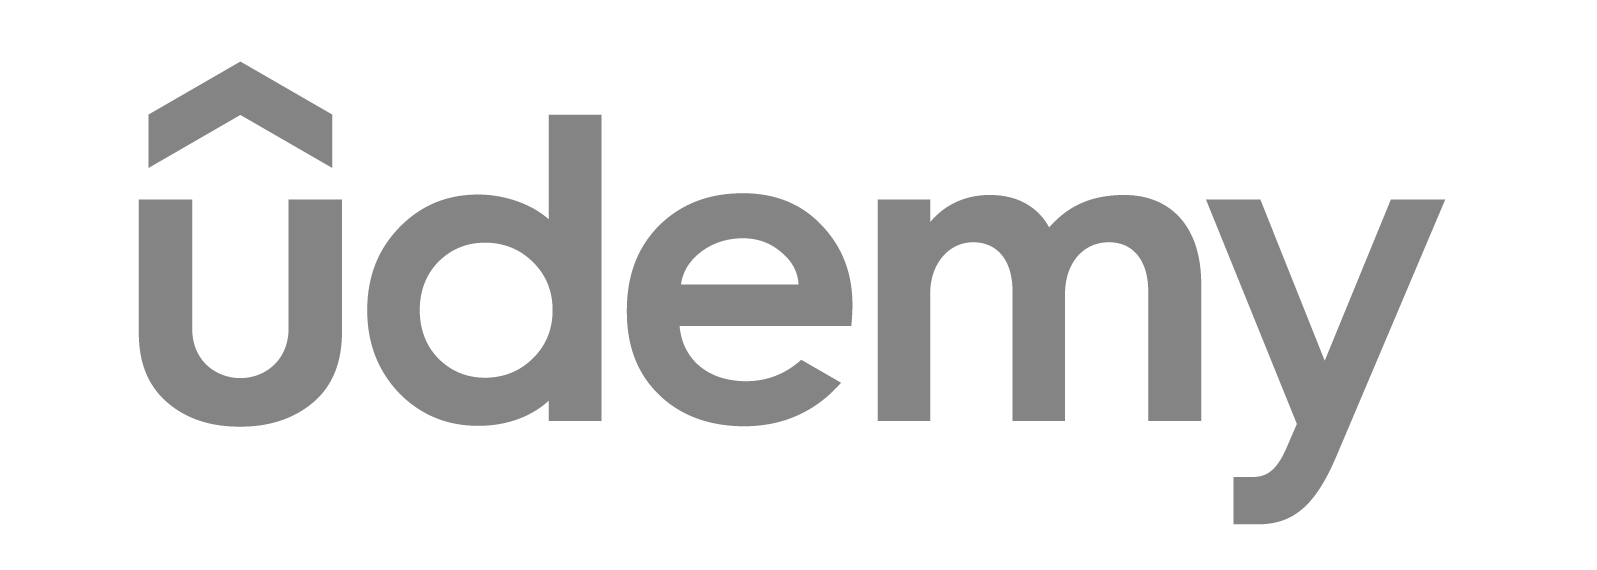 ucdemy: kostenlose seminare für studenten